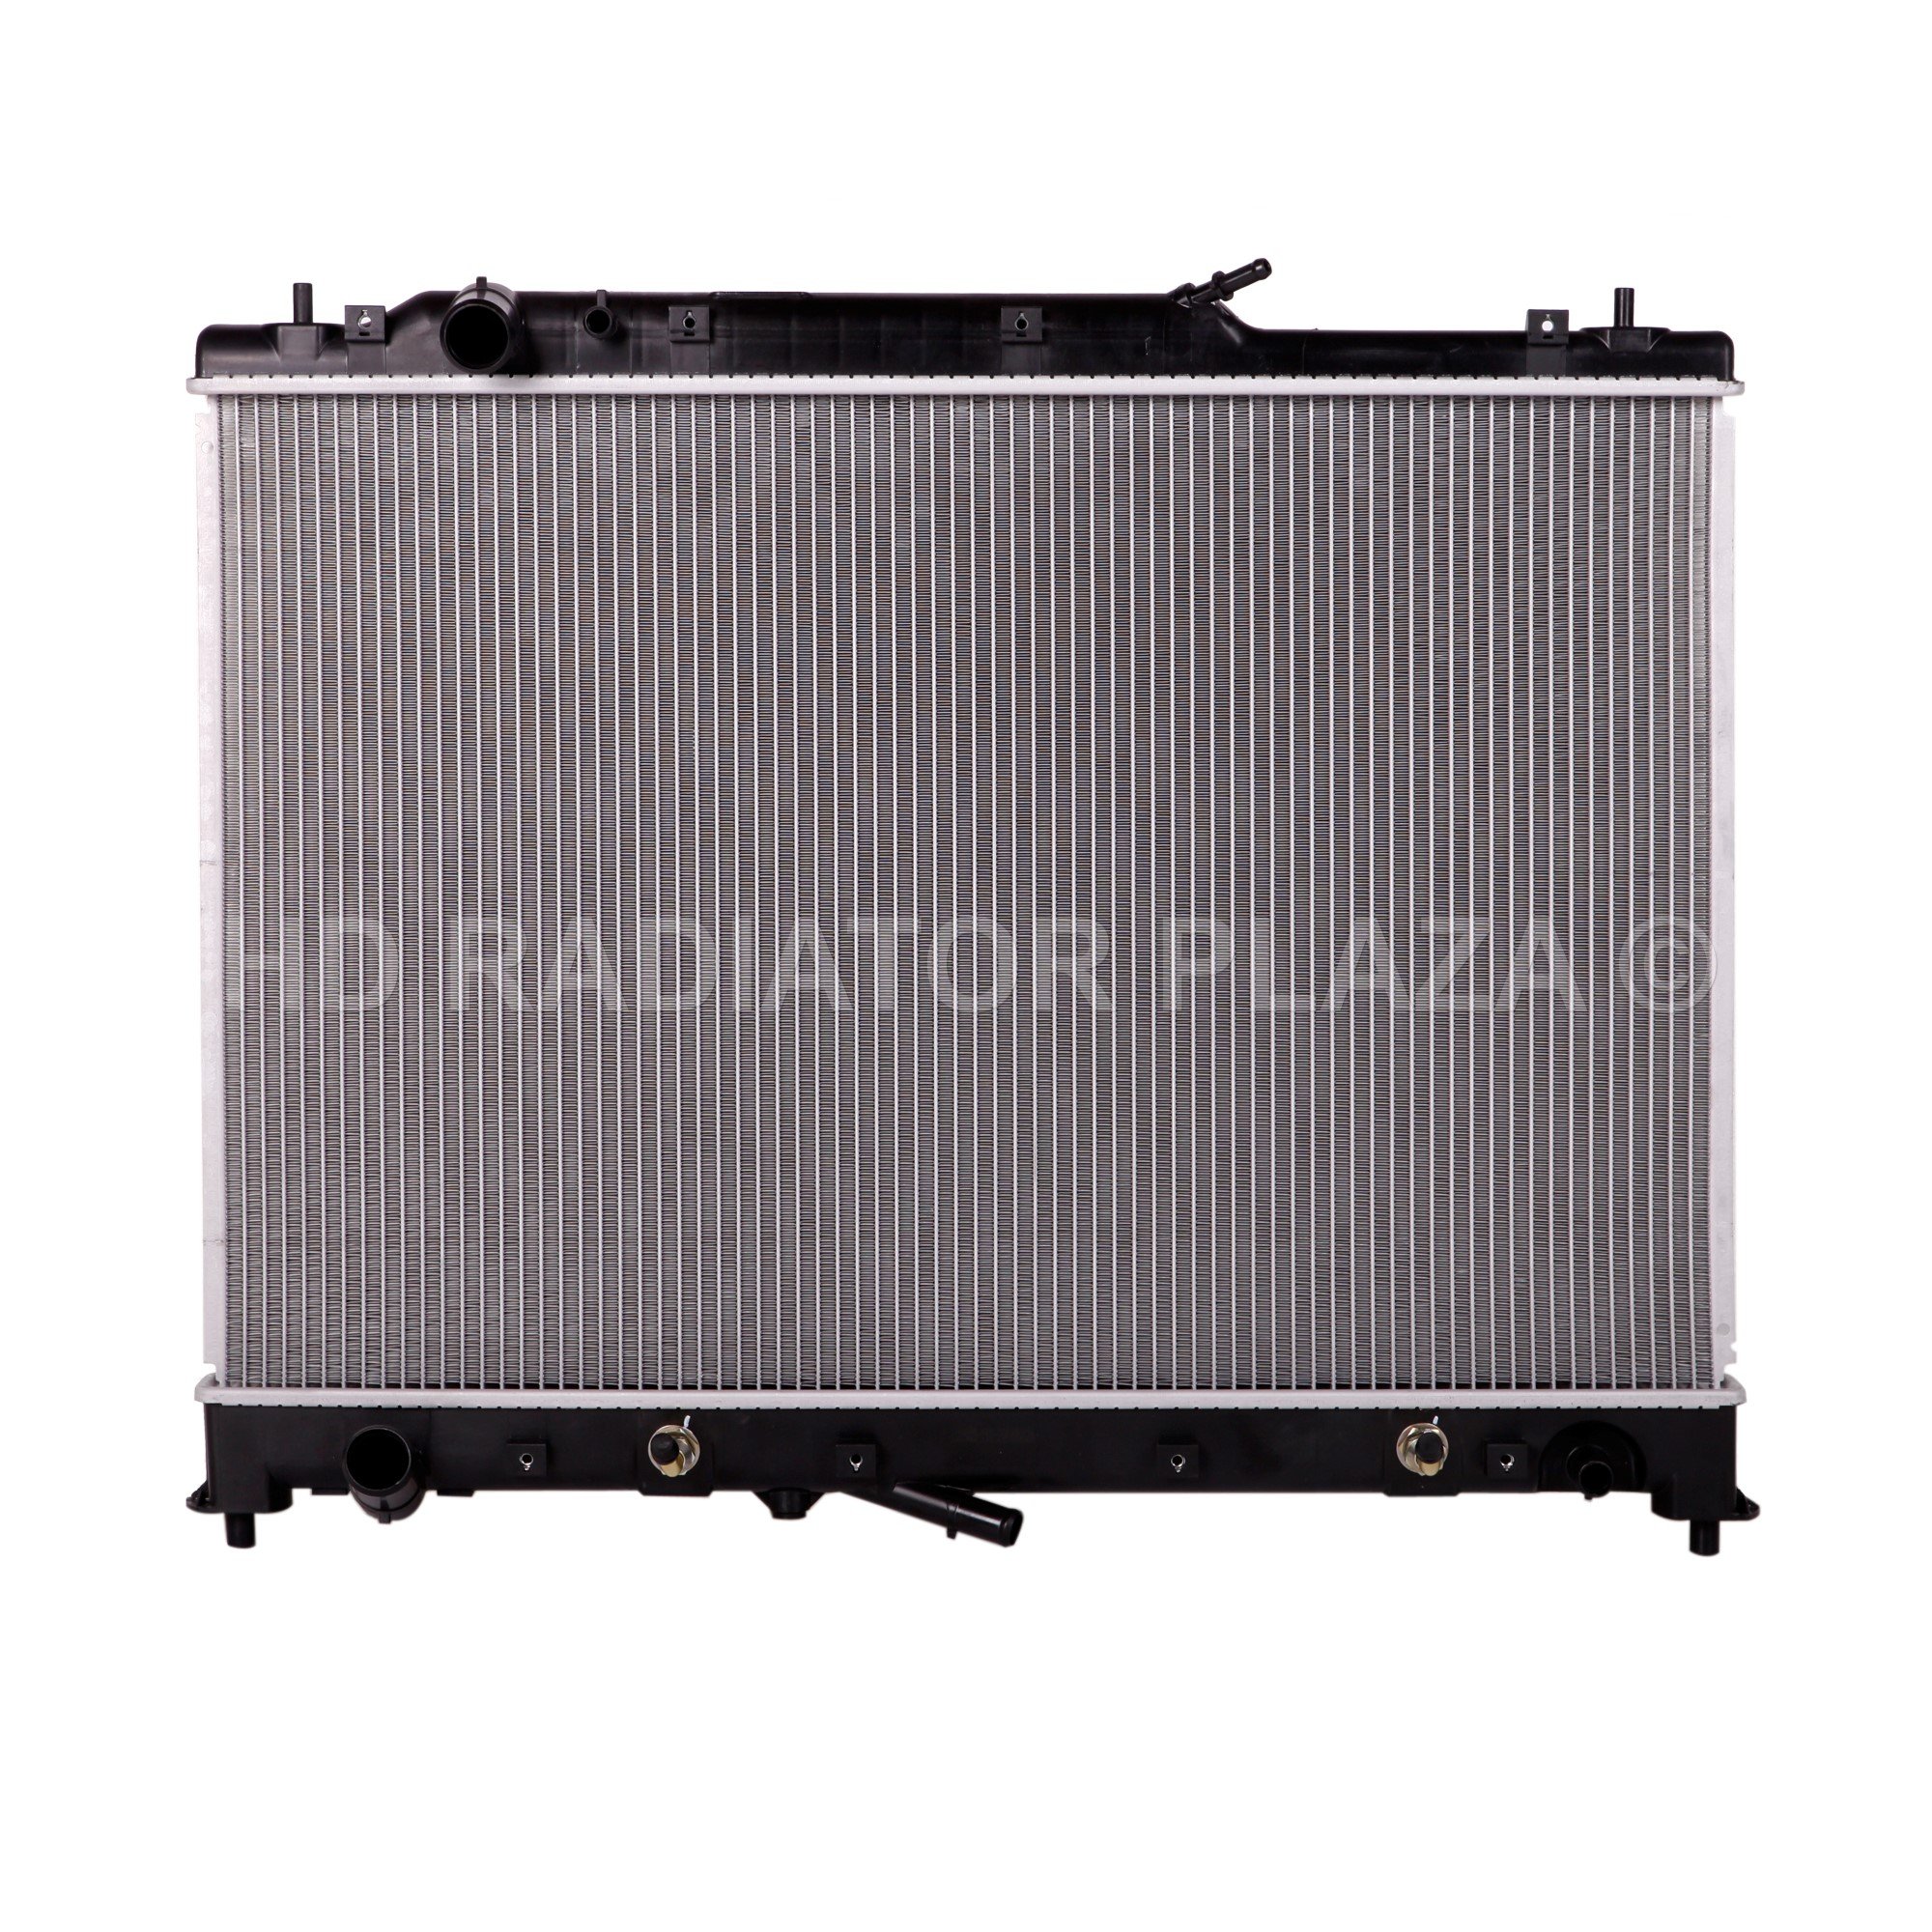 Radiator for 07-15 Mazda CX-9